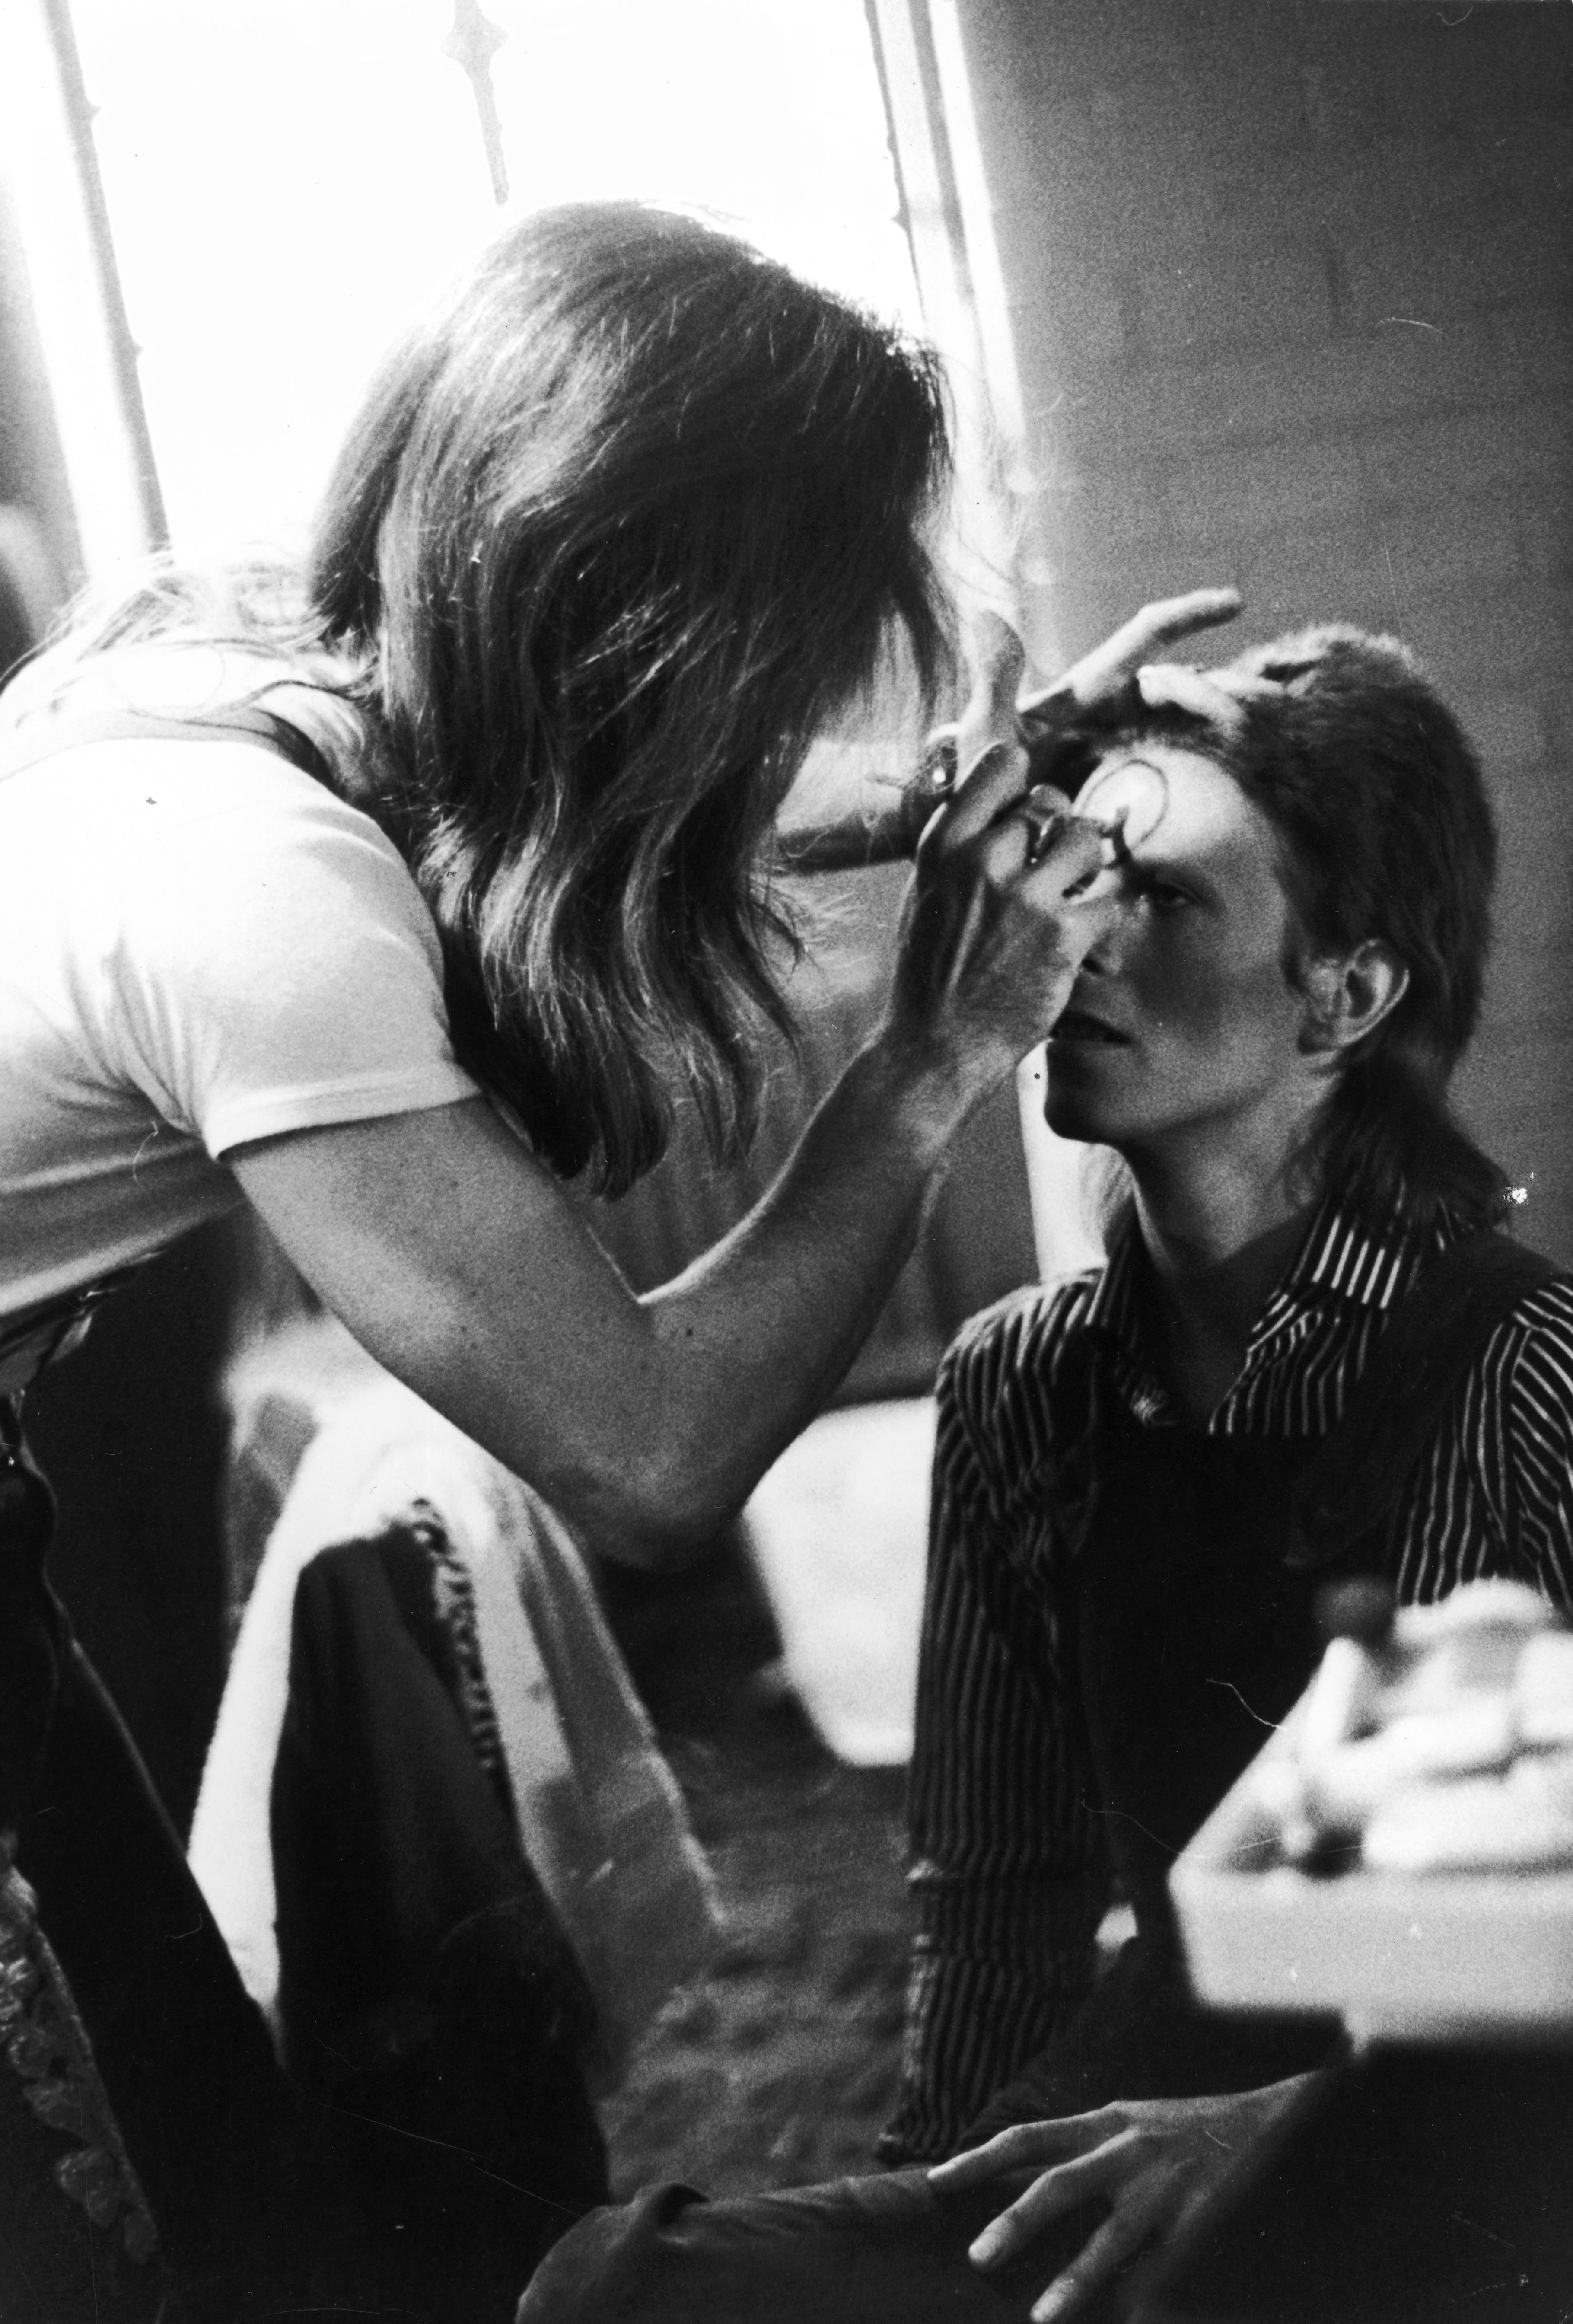 11 descarados y desvergonzados momentos extraños de David Bowie, cuyo legado LGBT+ vive hoy en día